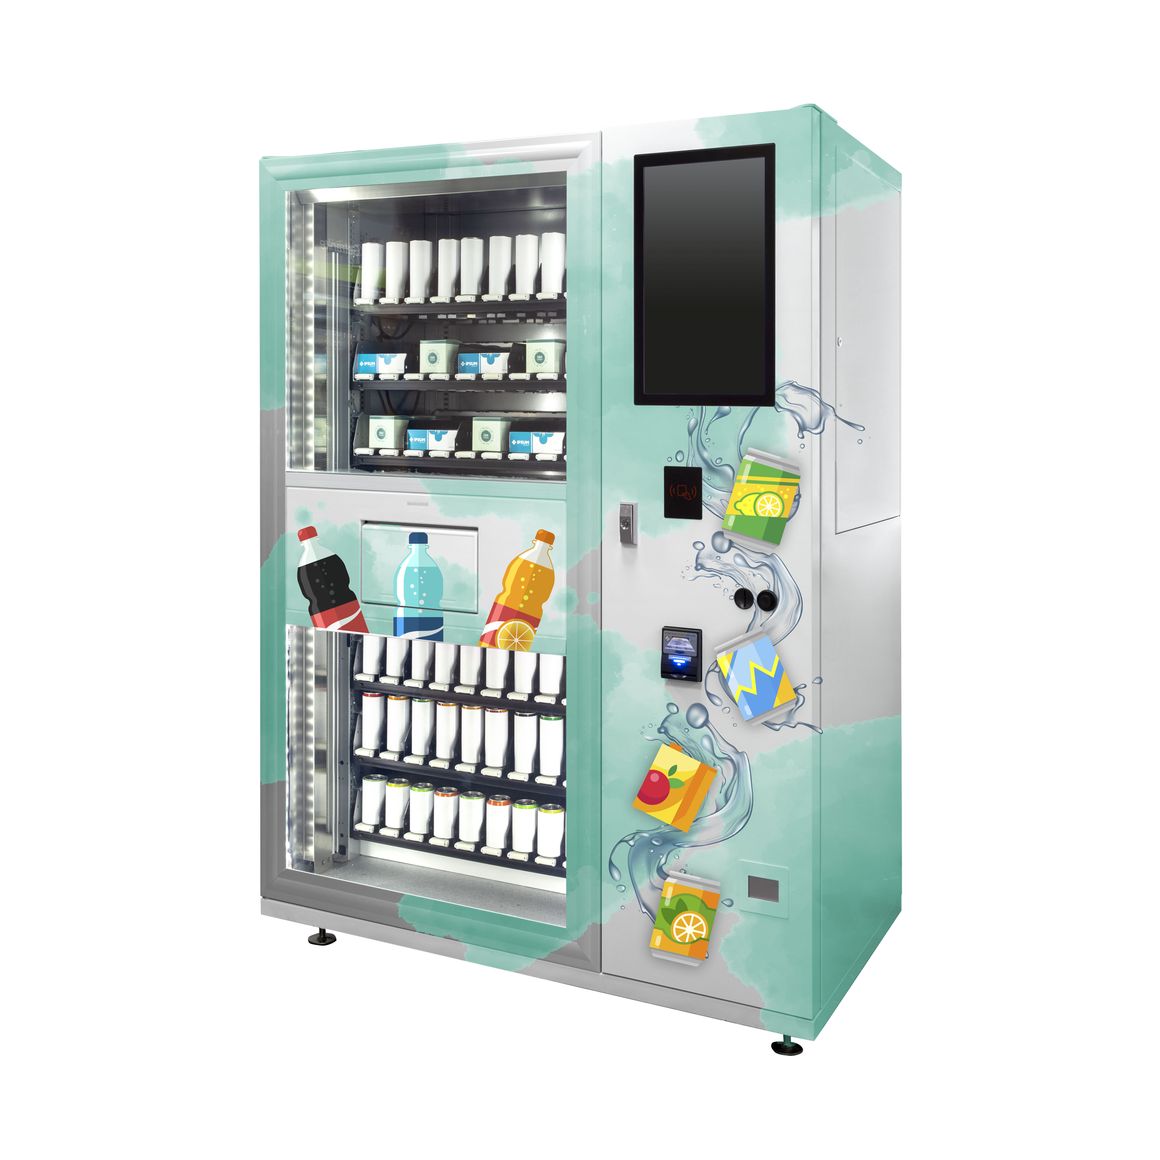 Verkaufsautomat „Lemgo“ als Getränkeautomat